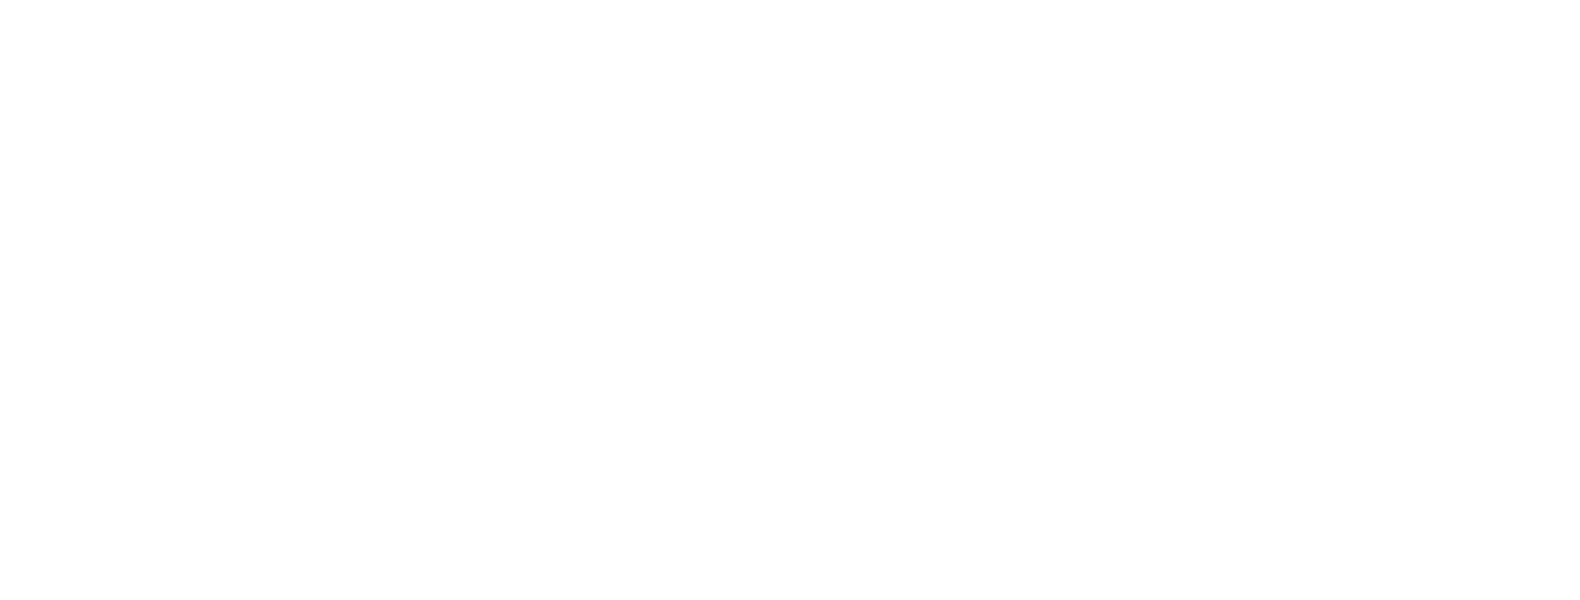 Elements Entertainment